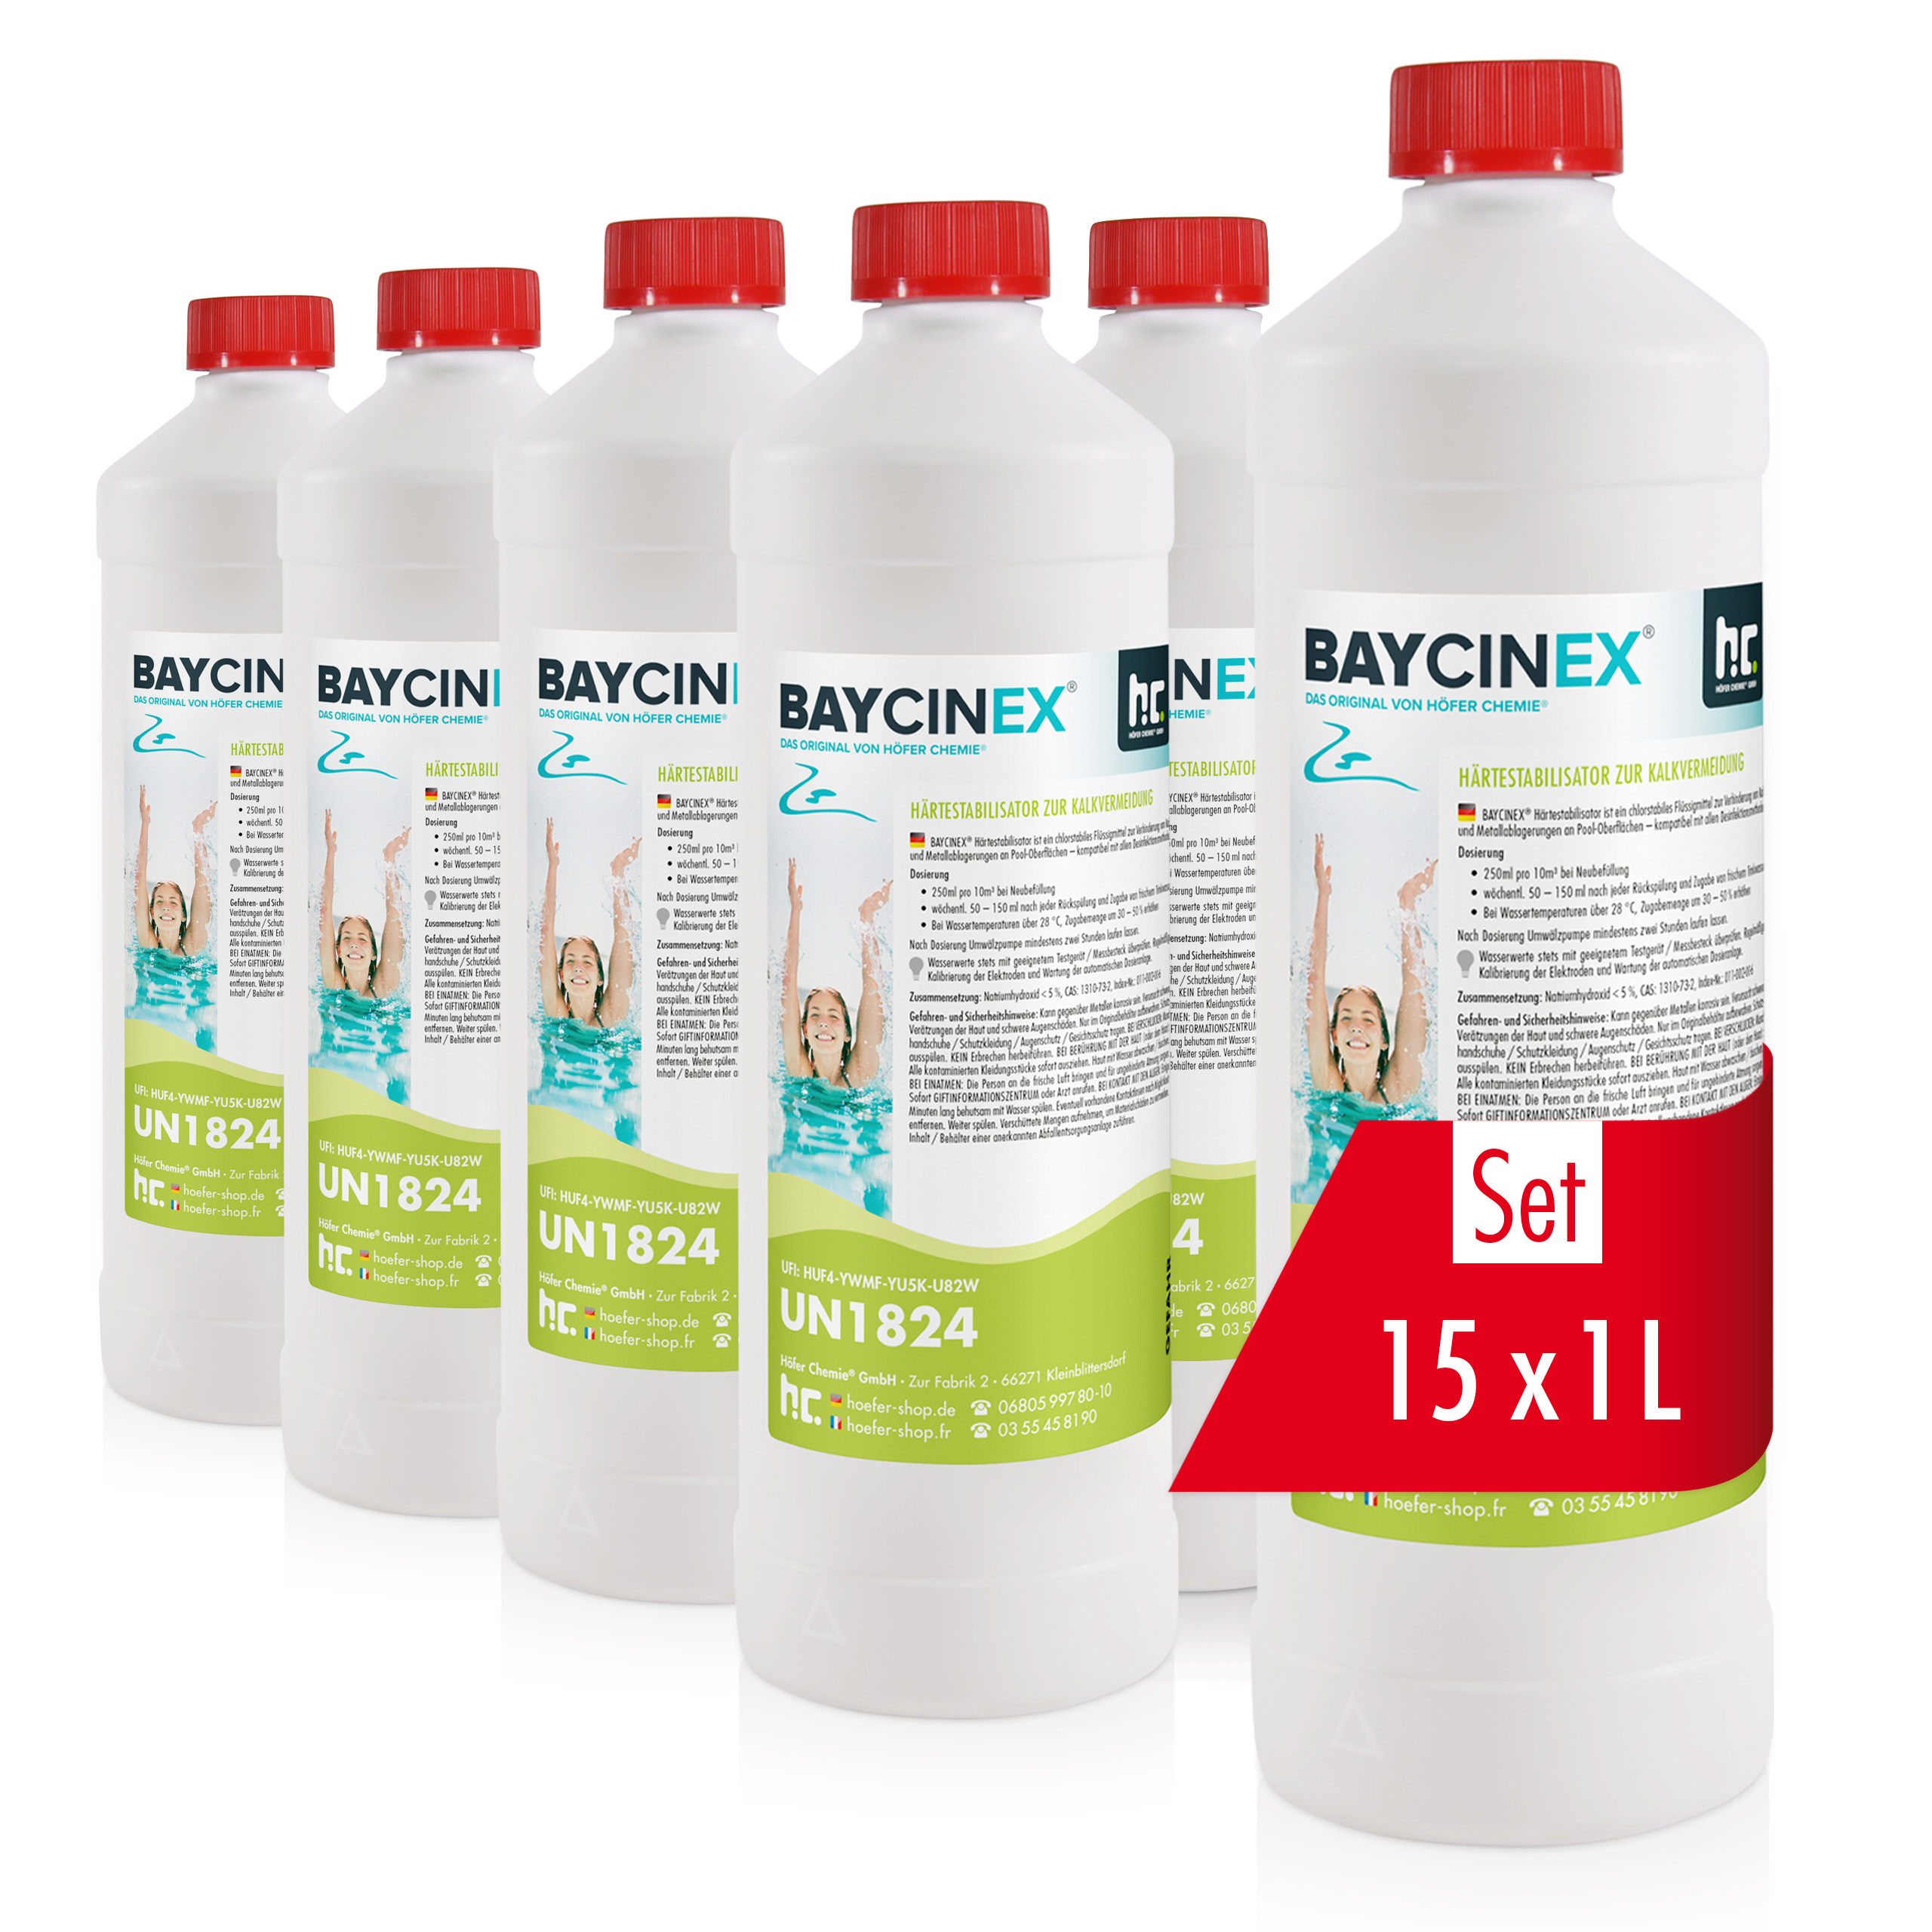 1 L BAYCINEX® Stabilisateur de dureté à action anti-calcaire